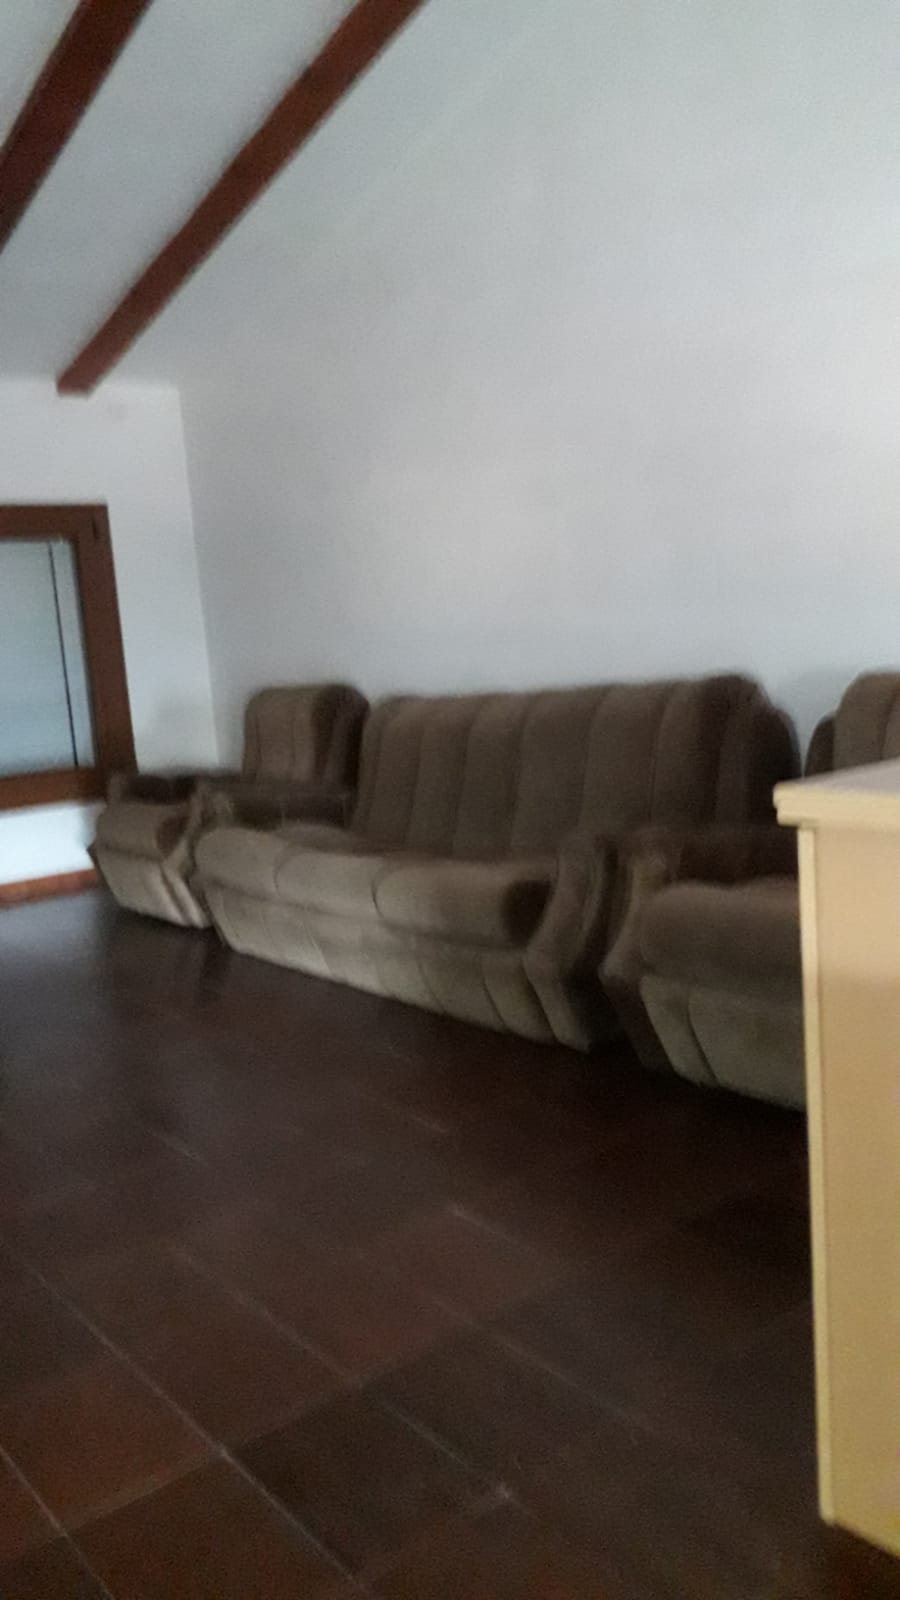 Servicio de recogida de muebles viejos y vaciado de pisos en Benifallet - ¡Trabajo de calidad!